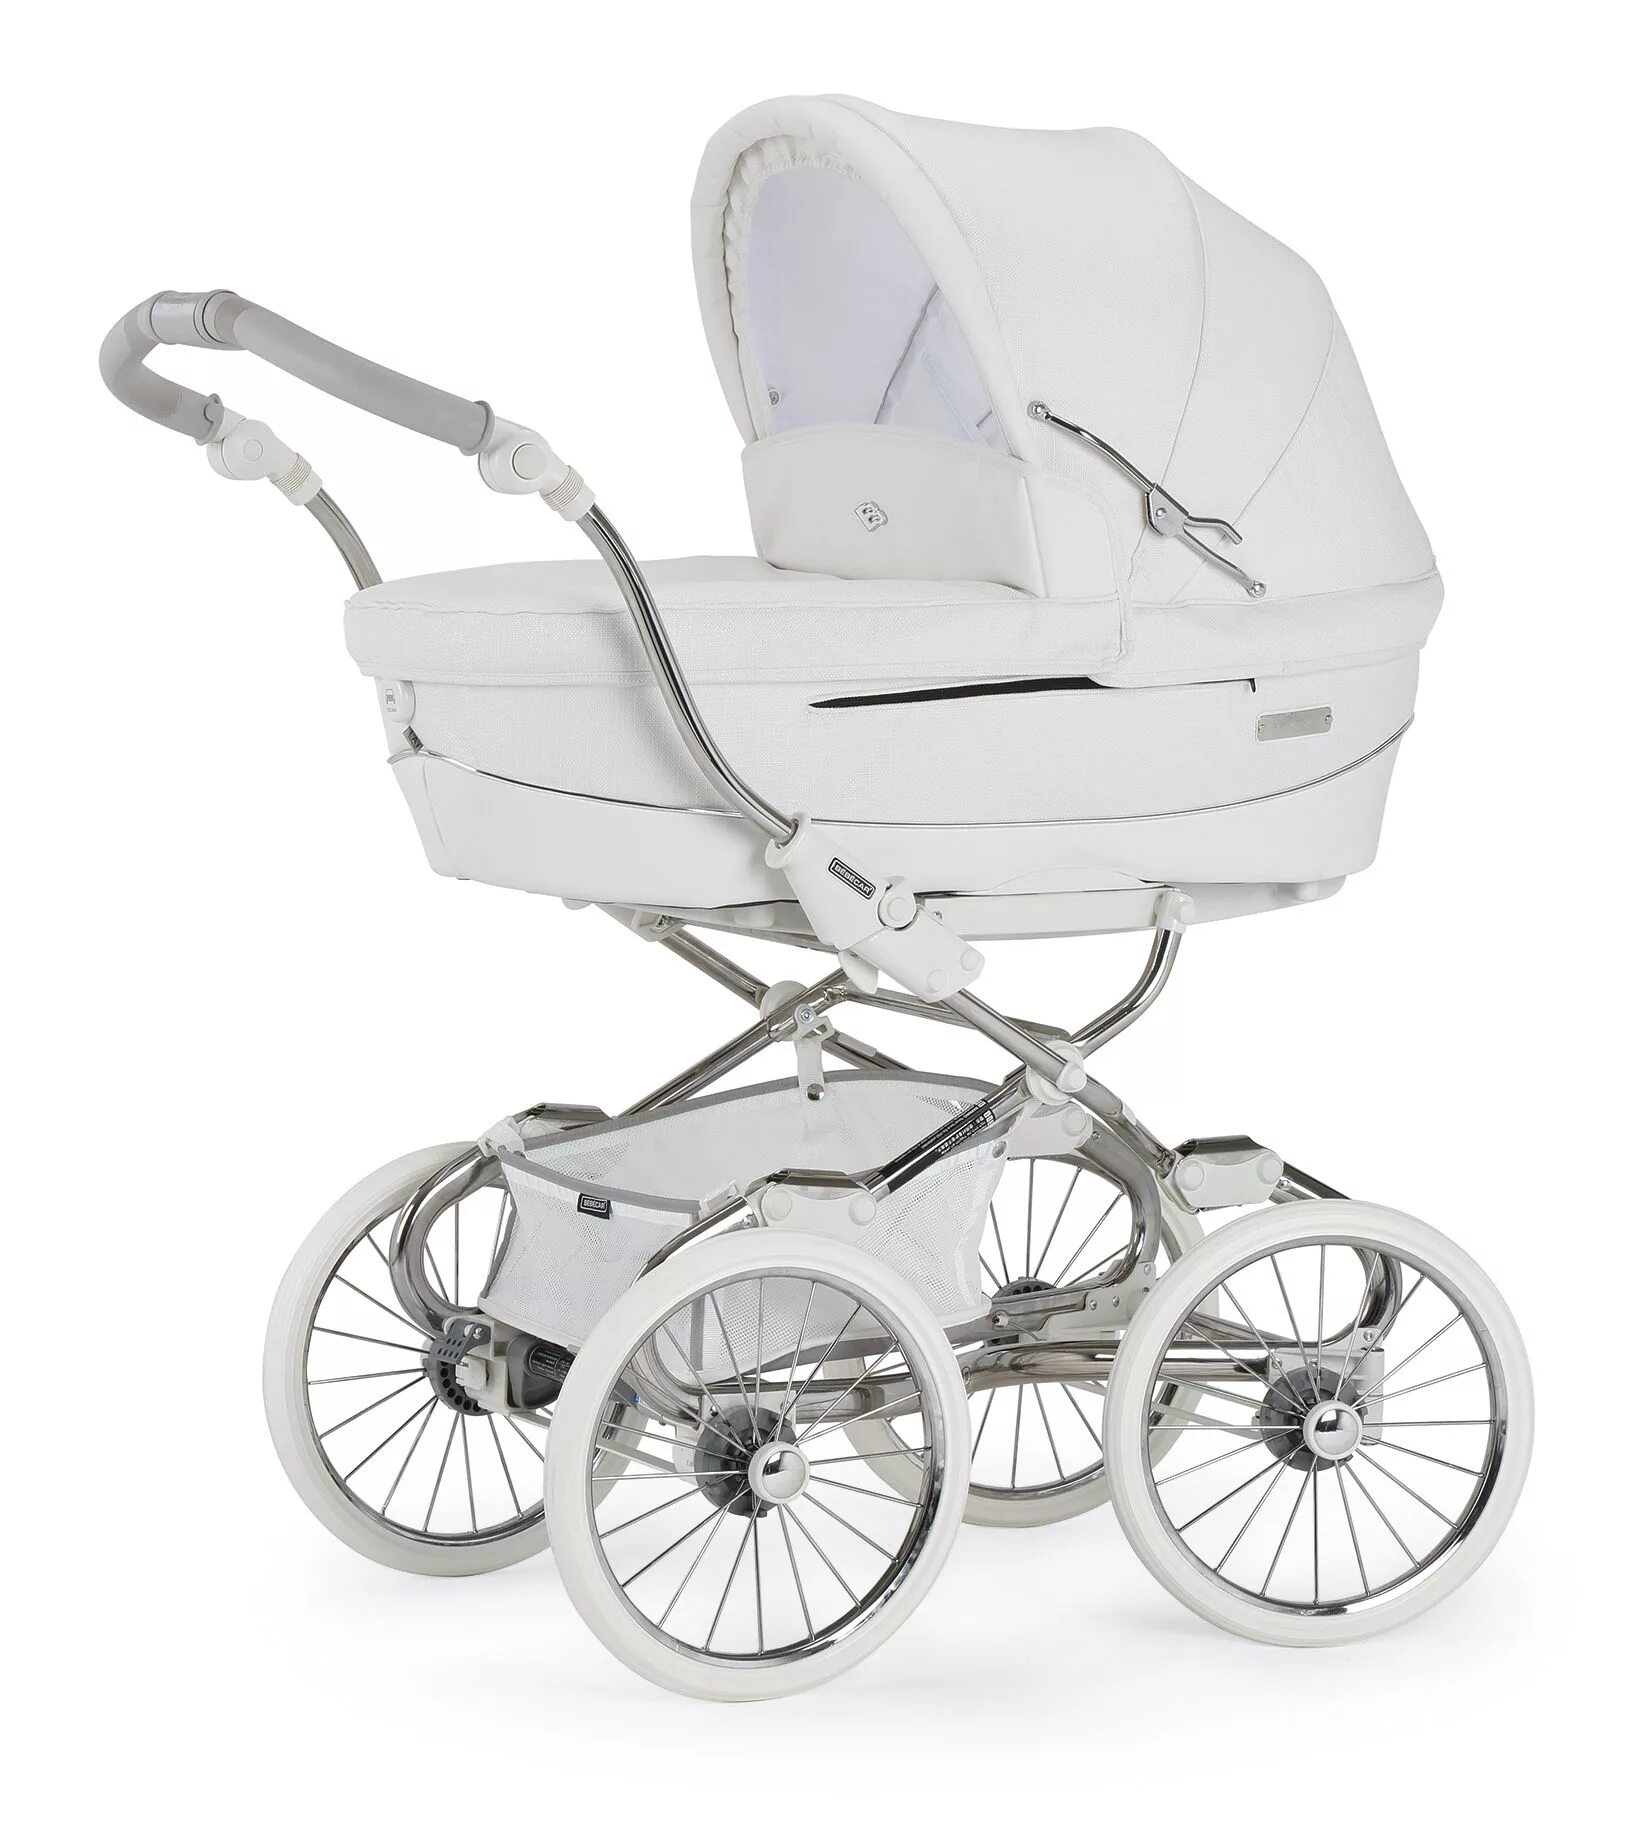 Детские коляски купить магазины. Bebecar Stylo class 2 в 1. Bebecar Stylo class люлька. Коляска для новорожденных Bebecar Stylo class. Коляска-люлька для новорожденных 1 в 1.